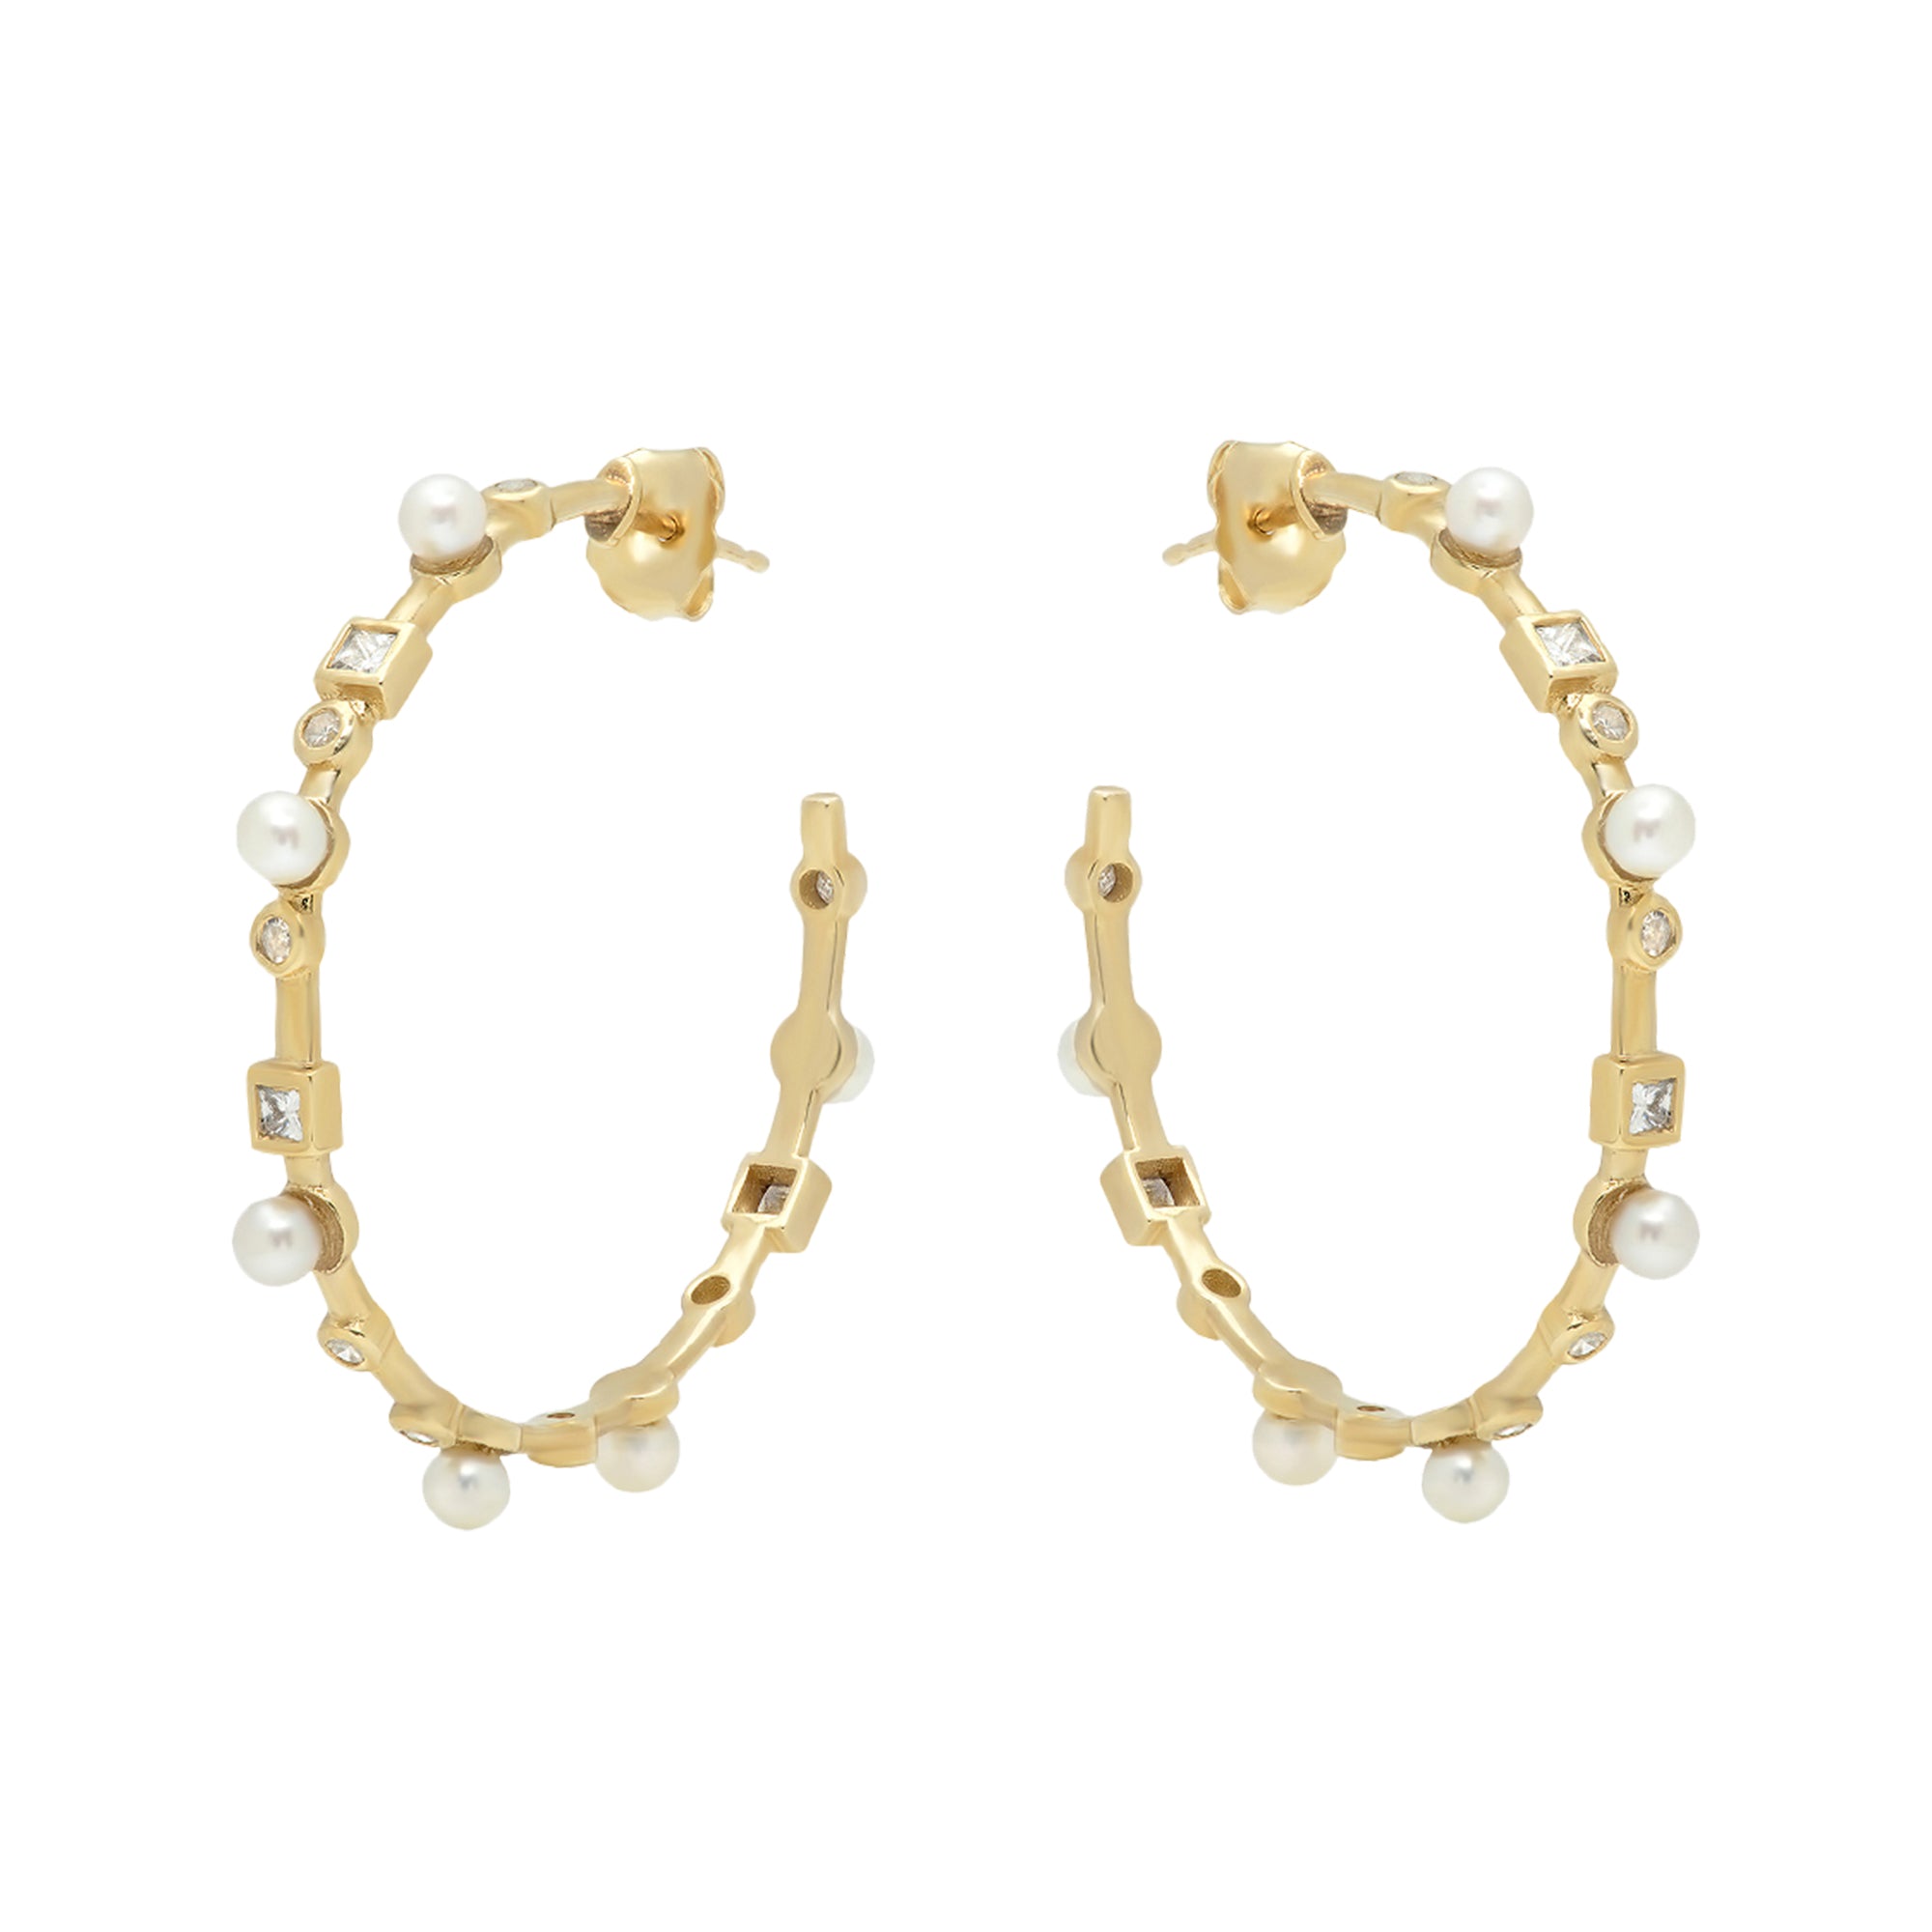 Nancy Newberg Hoop Earrings with Pearls and Diamonds - Earrings ...